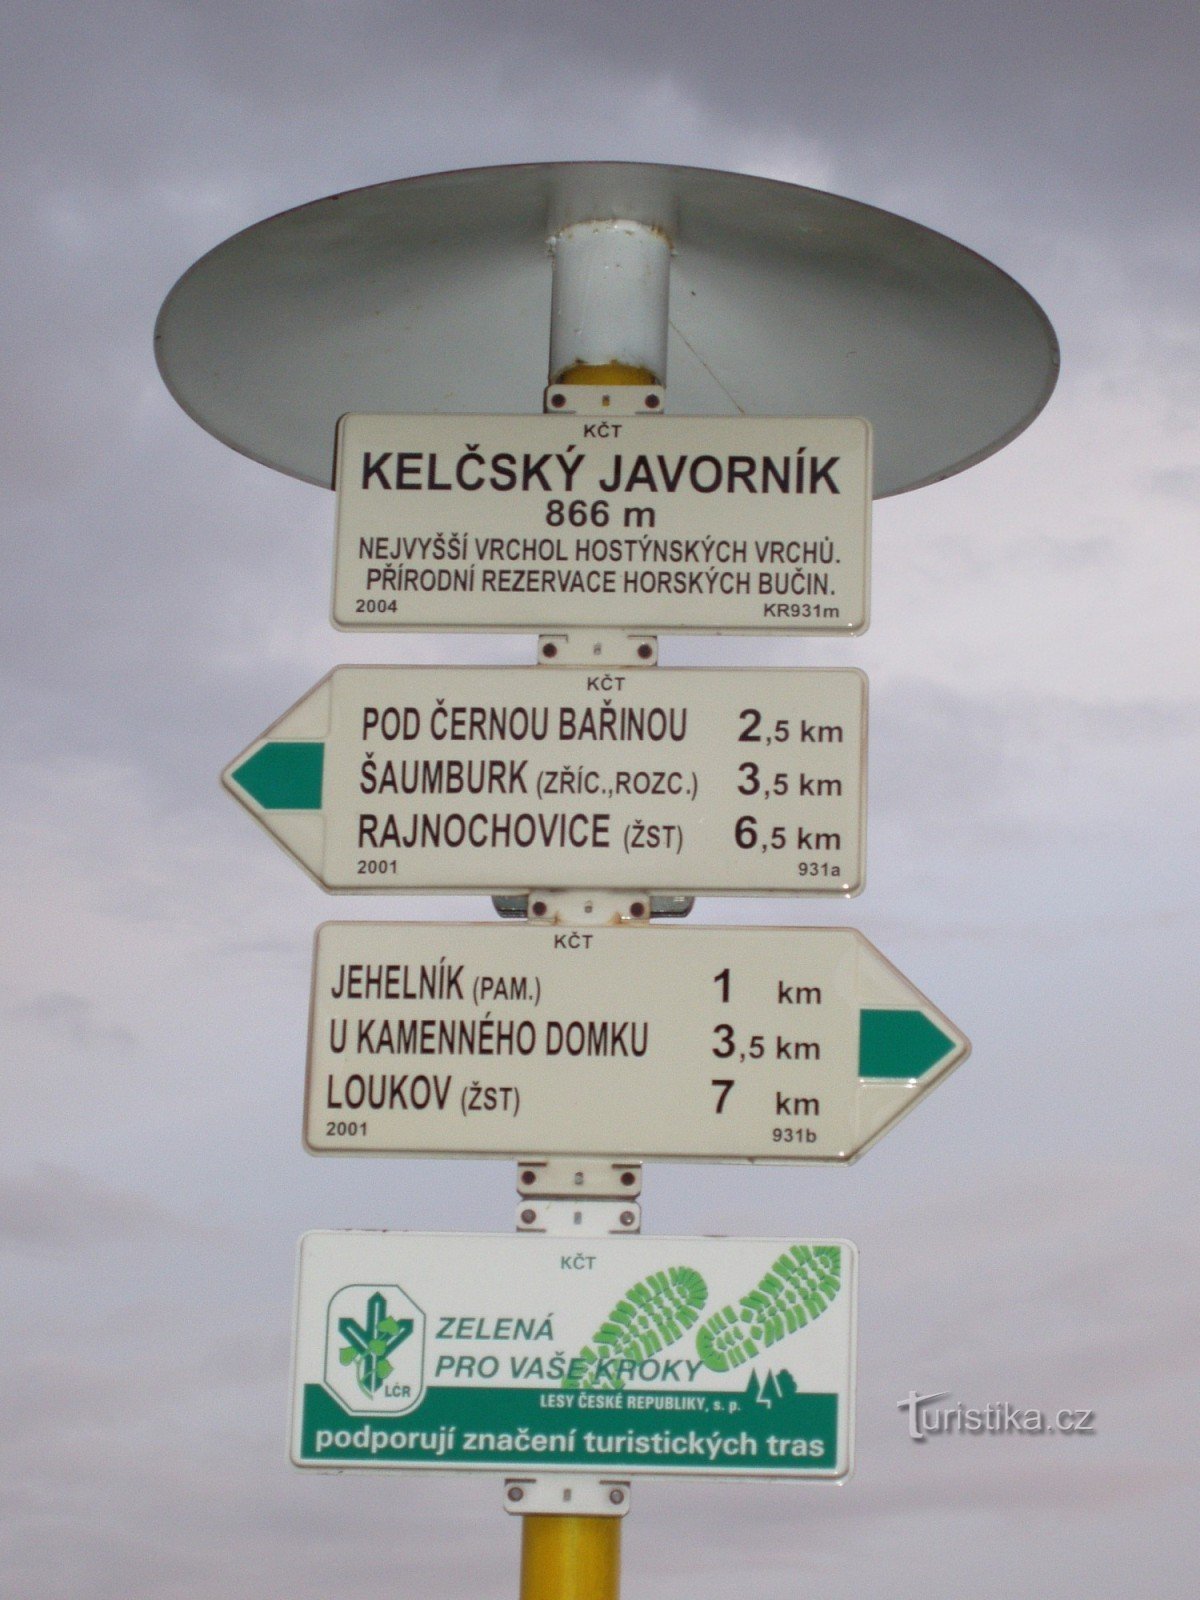 Fra Chvalčov til Kelčský Javorník naturreservat